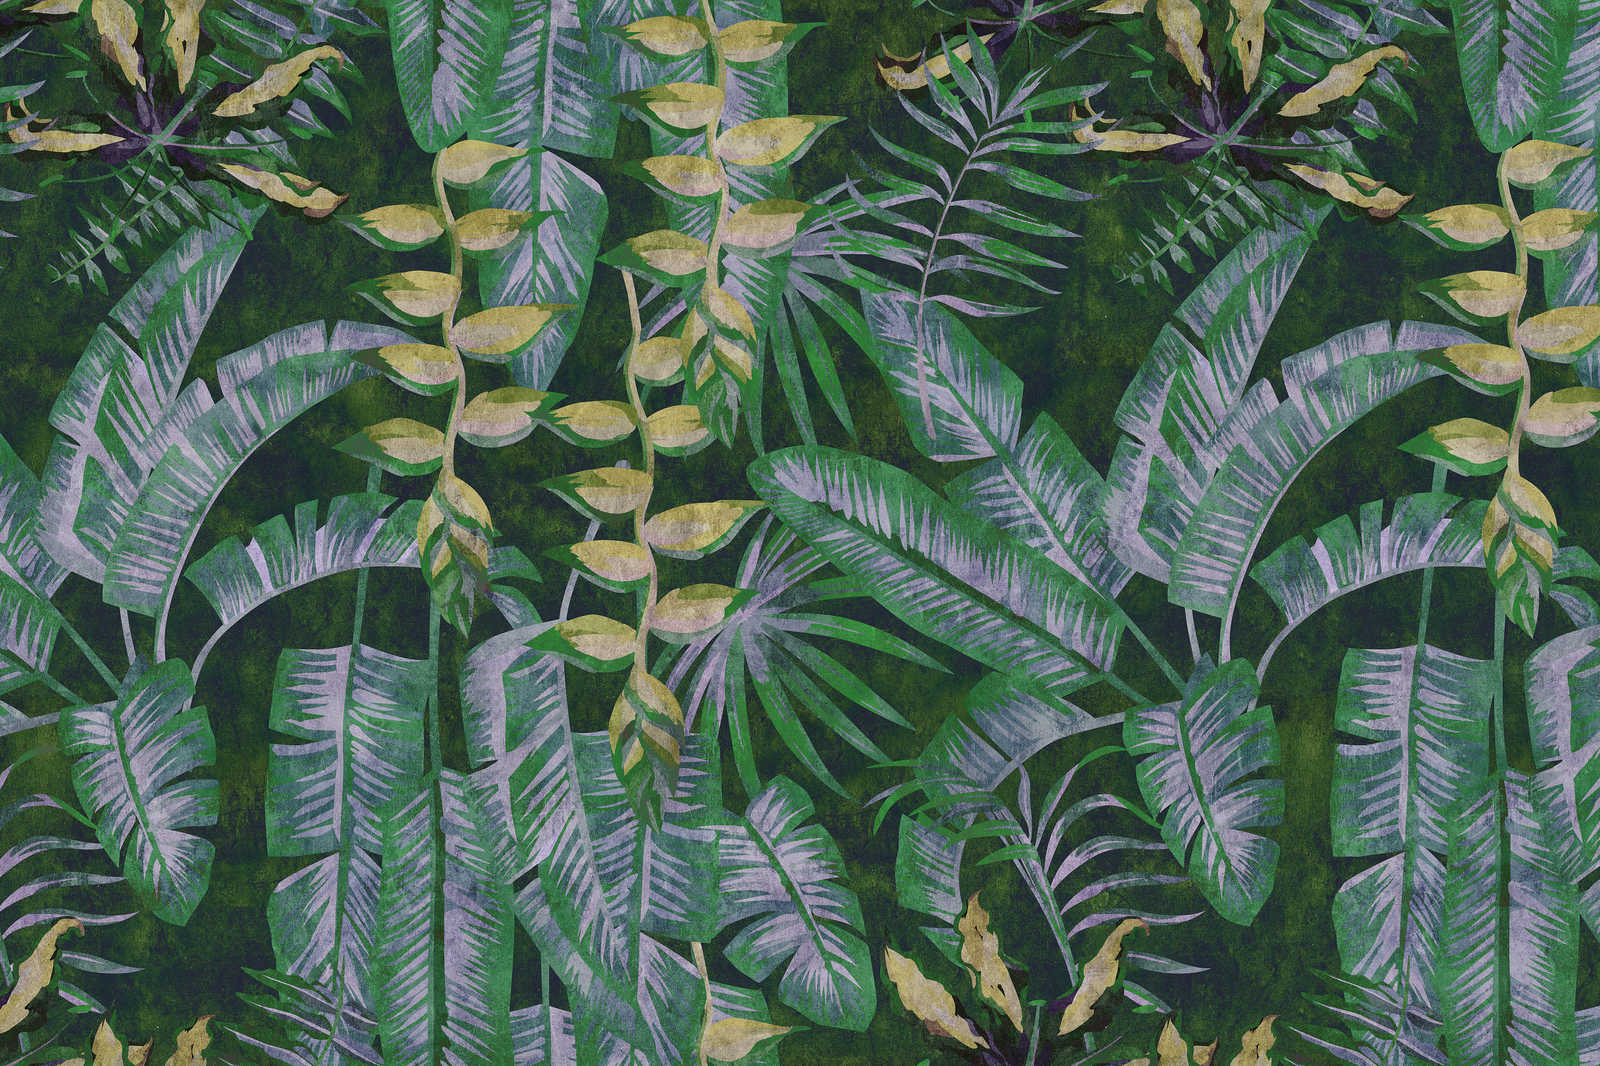             Tropicana 2 - Leinwandbild mit tropische Pflanzen – 0,90 m x 0,60 m
        